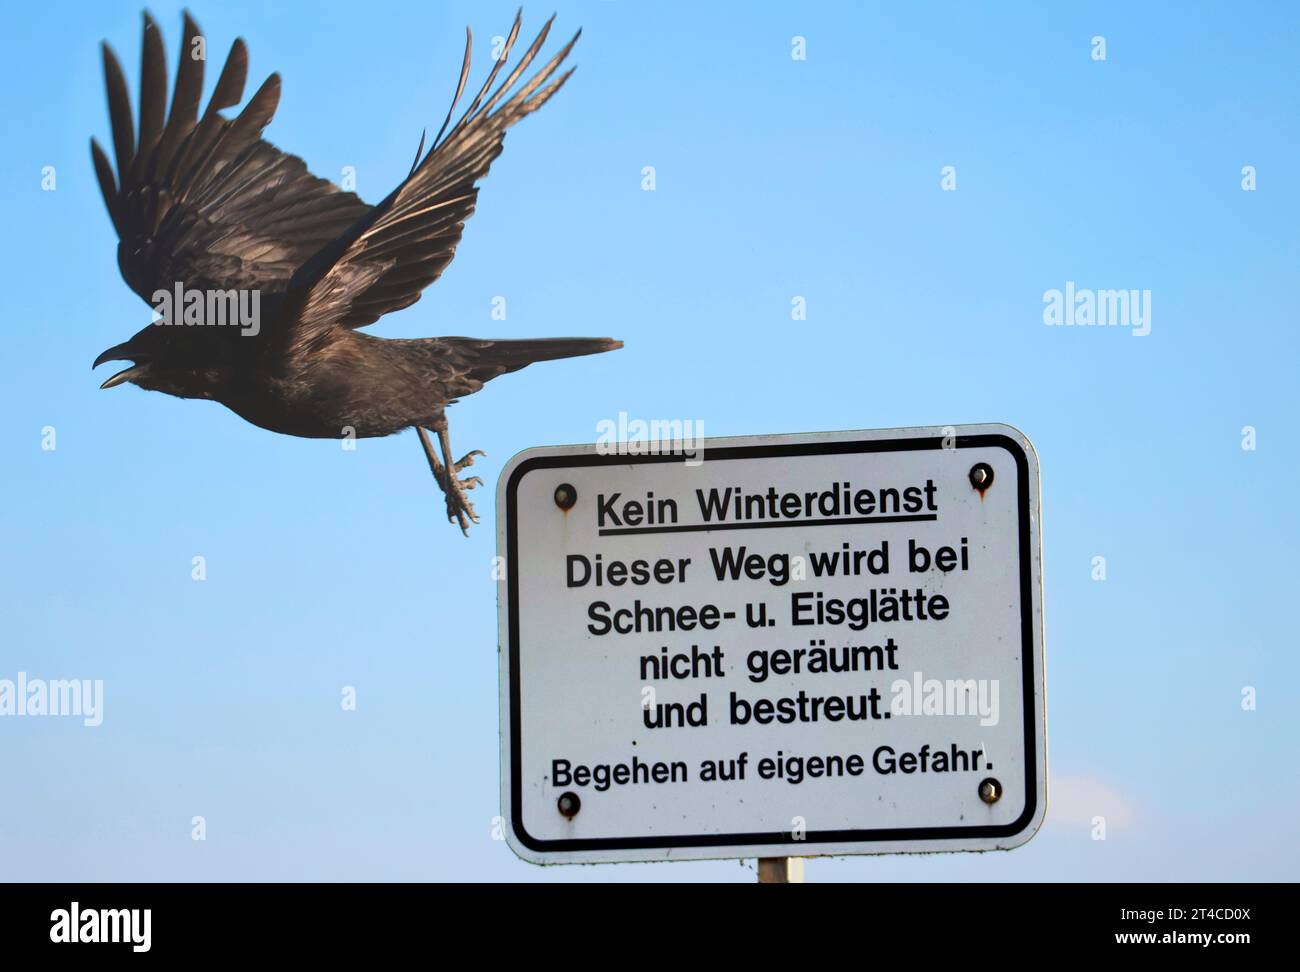 Carrion corone (Corvus corone, Corvus corone corone), partendo da un cartello 'Kein Winterdienst' e chiamando, vista laterale, Germania Foto Stock